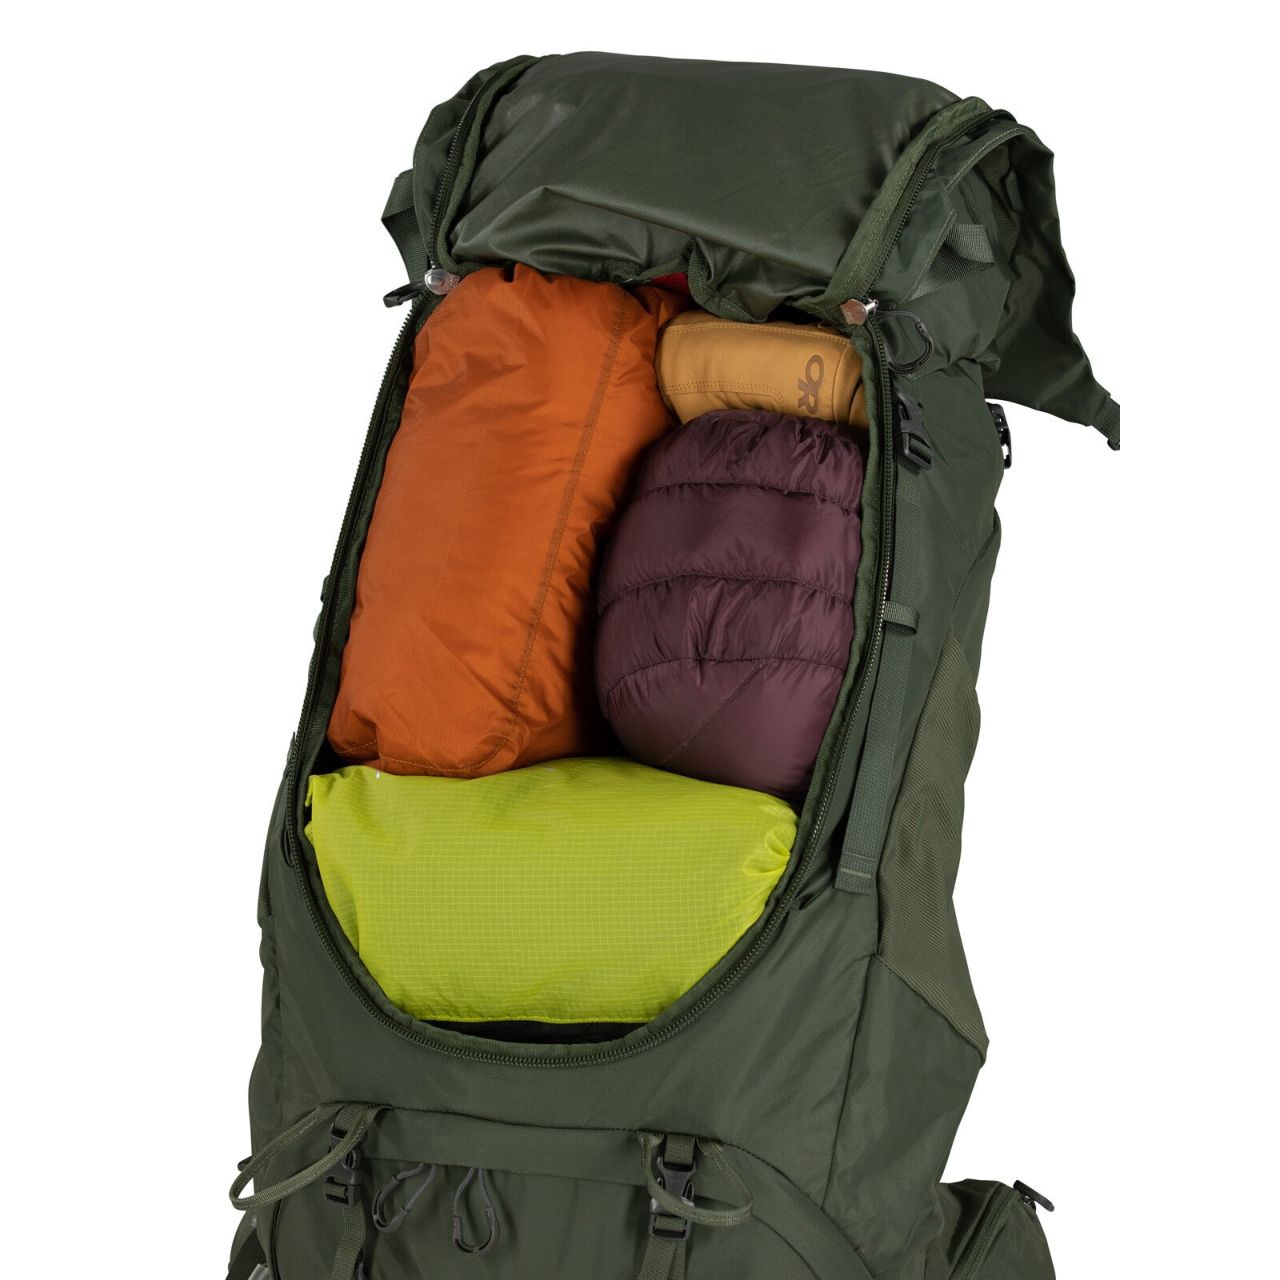 Osprey Kestrel 58 - Men's | Backpacking Packs | Day Packs